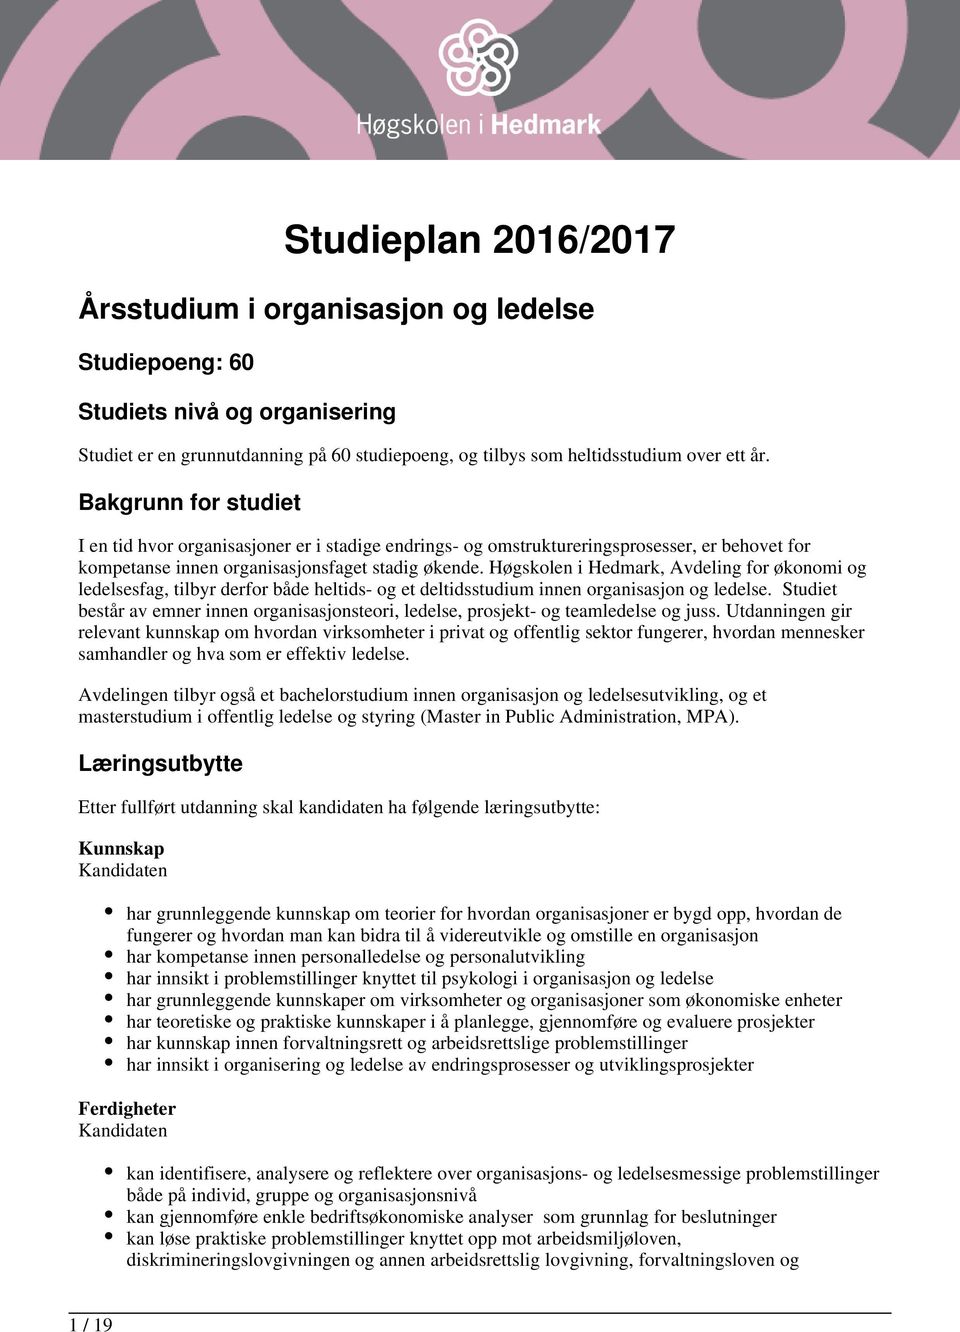 Høgskolen i Hedmark, Avdeling for økonomi og ledelsesfag, tilbyr derfor både heltids- og et deltidsstudium innen organisasjon og ledelse.